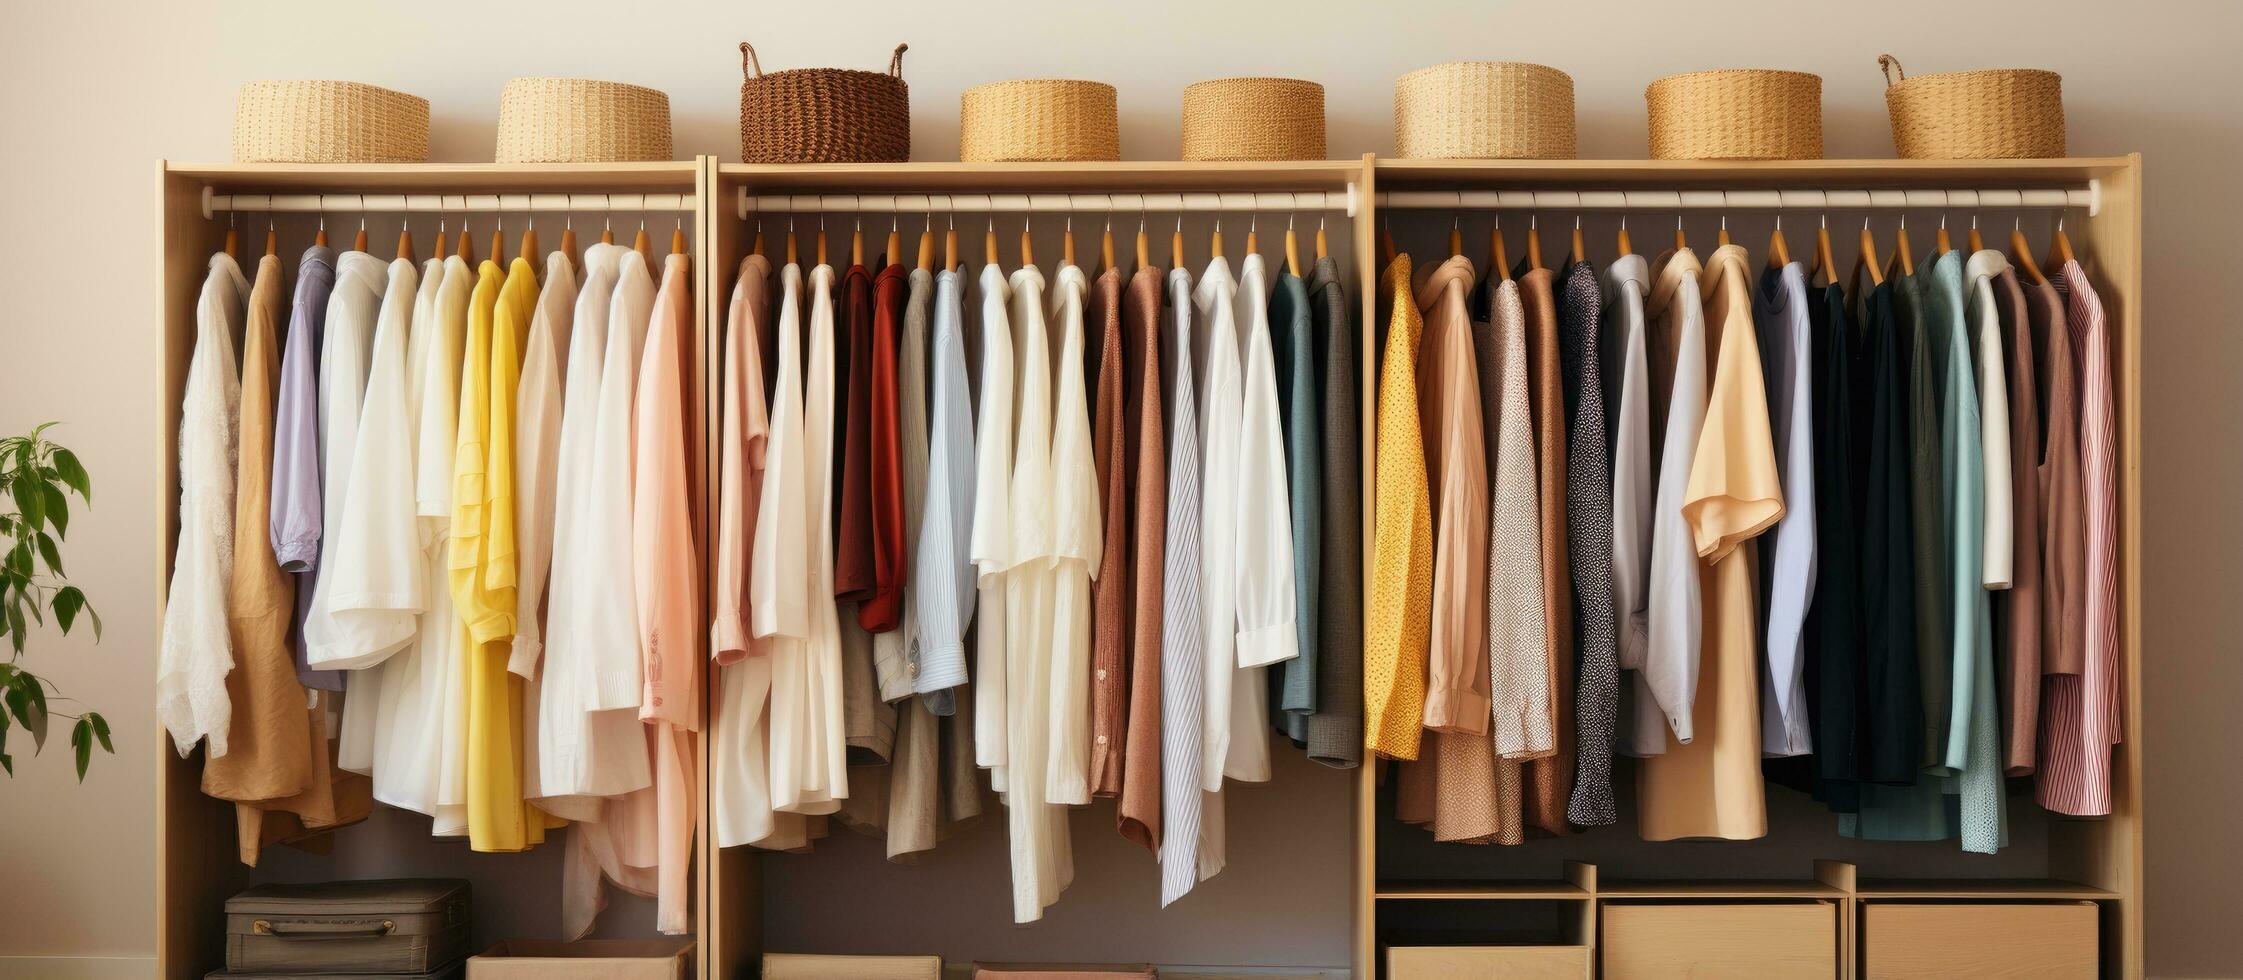 prático maneiras para organizar roupas verticalmente inspirado de marie kondo foto